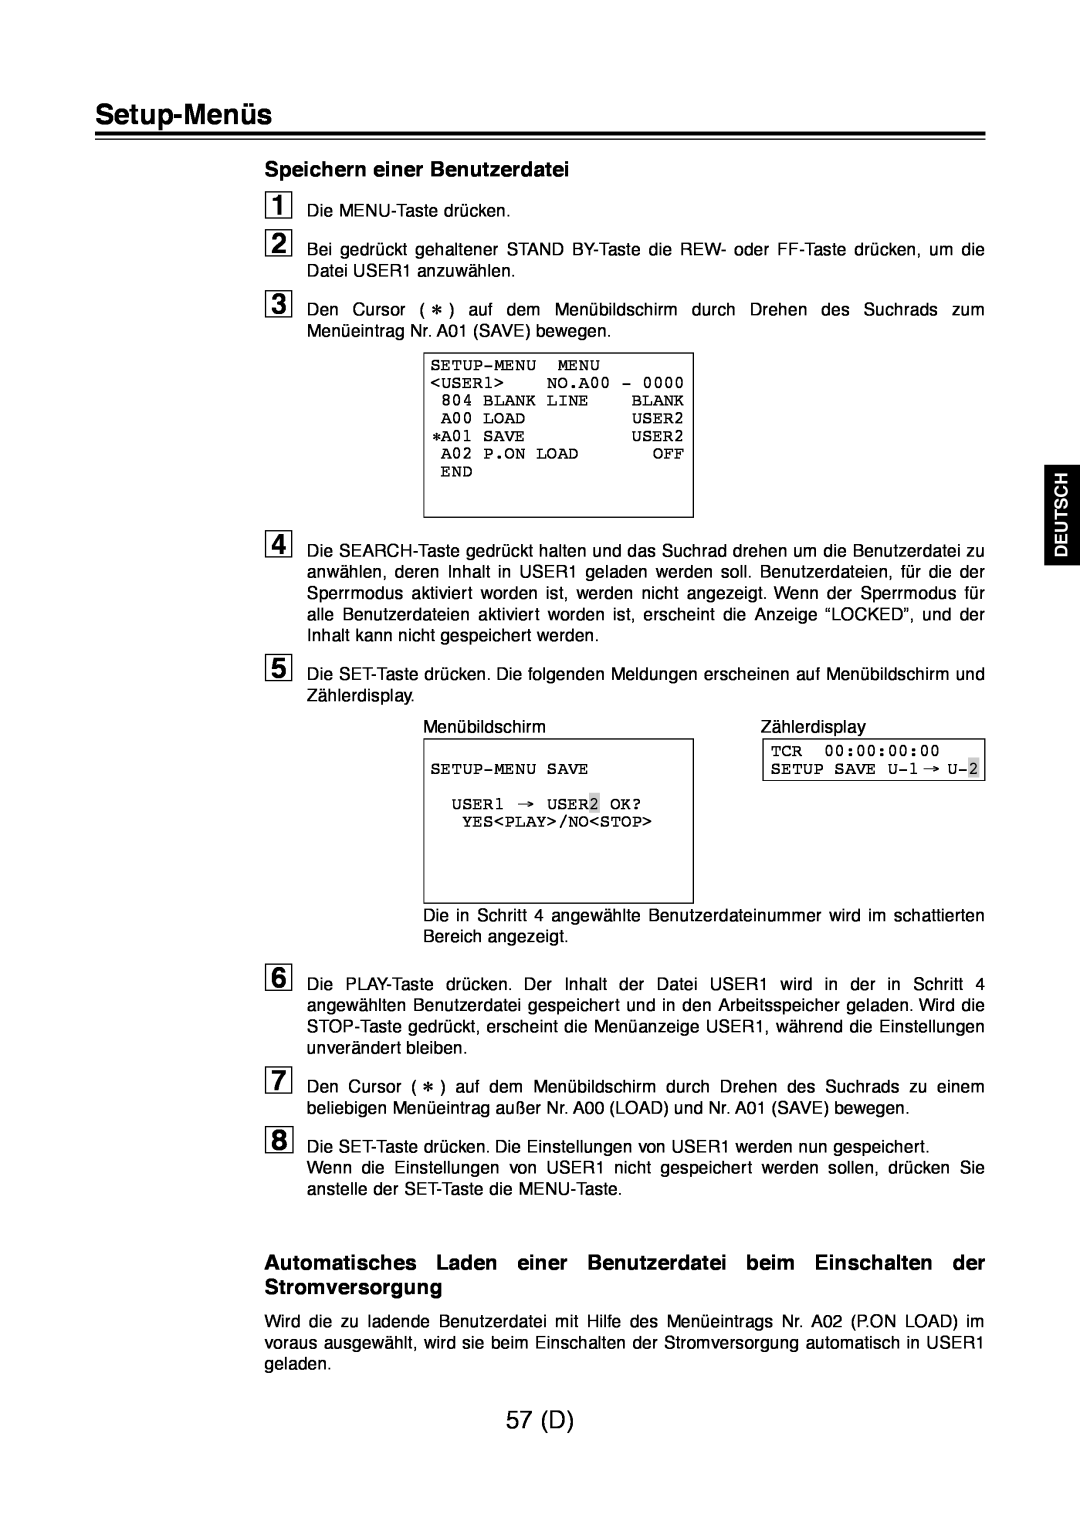 Panasonic AJ-D960 operating instructions 57 D, Speichern einer Benutzerdatei, Setup-Menüs, Deutsch 